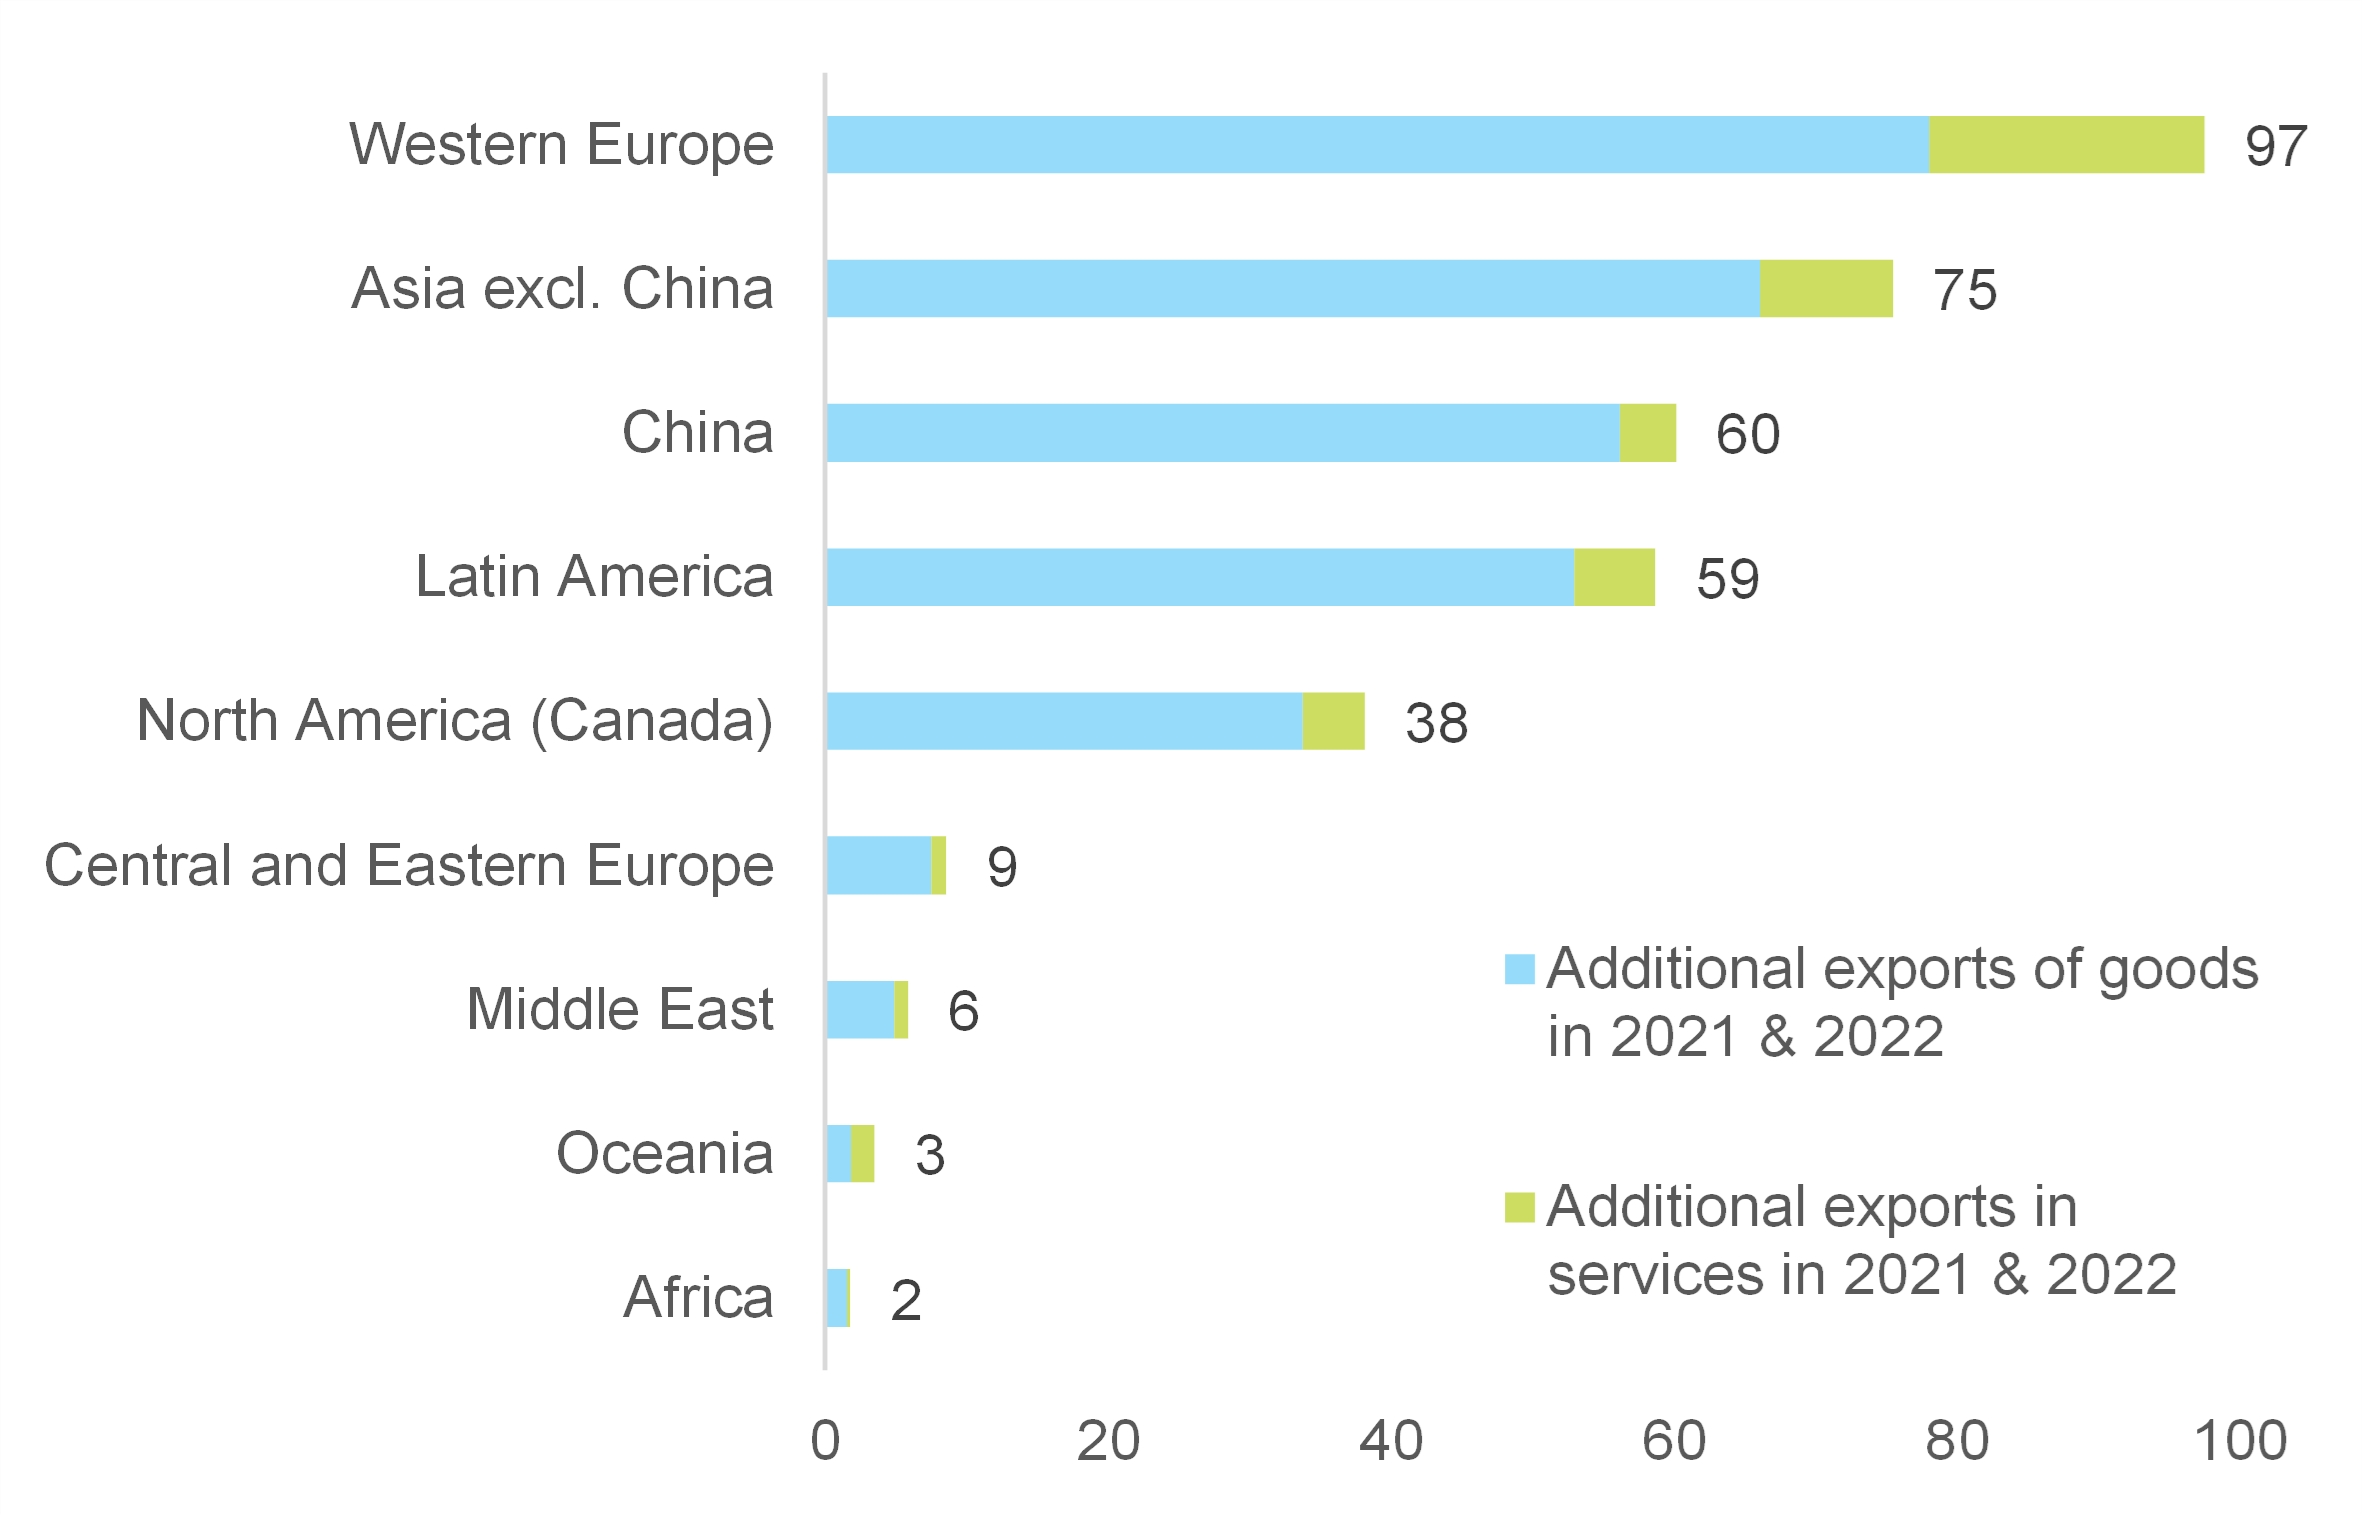 Ganhos adicionais de exportação de bens e serviços em 2021-2022 graças ao estímulo dos EUA, por região* (US$ bilhões)